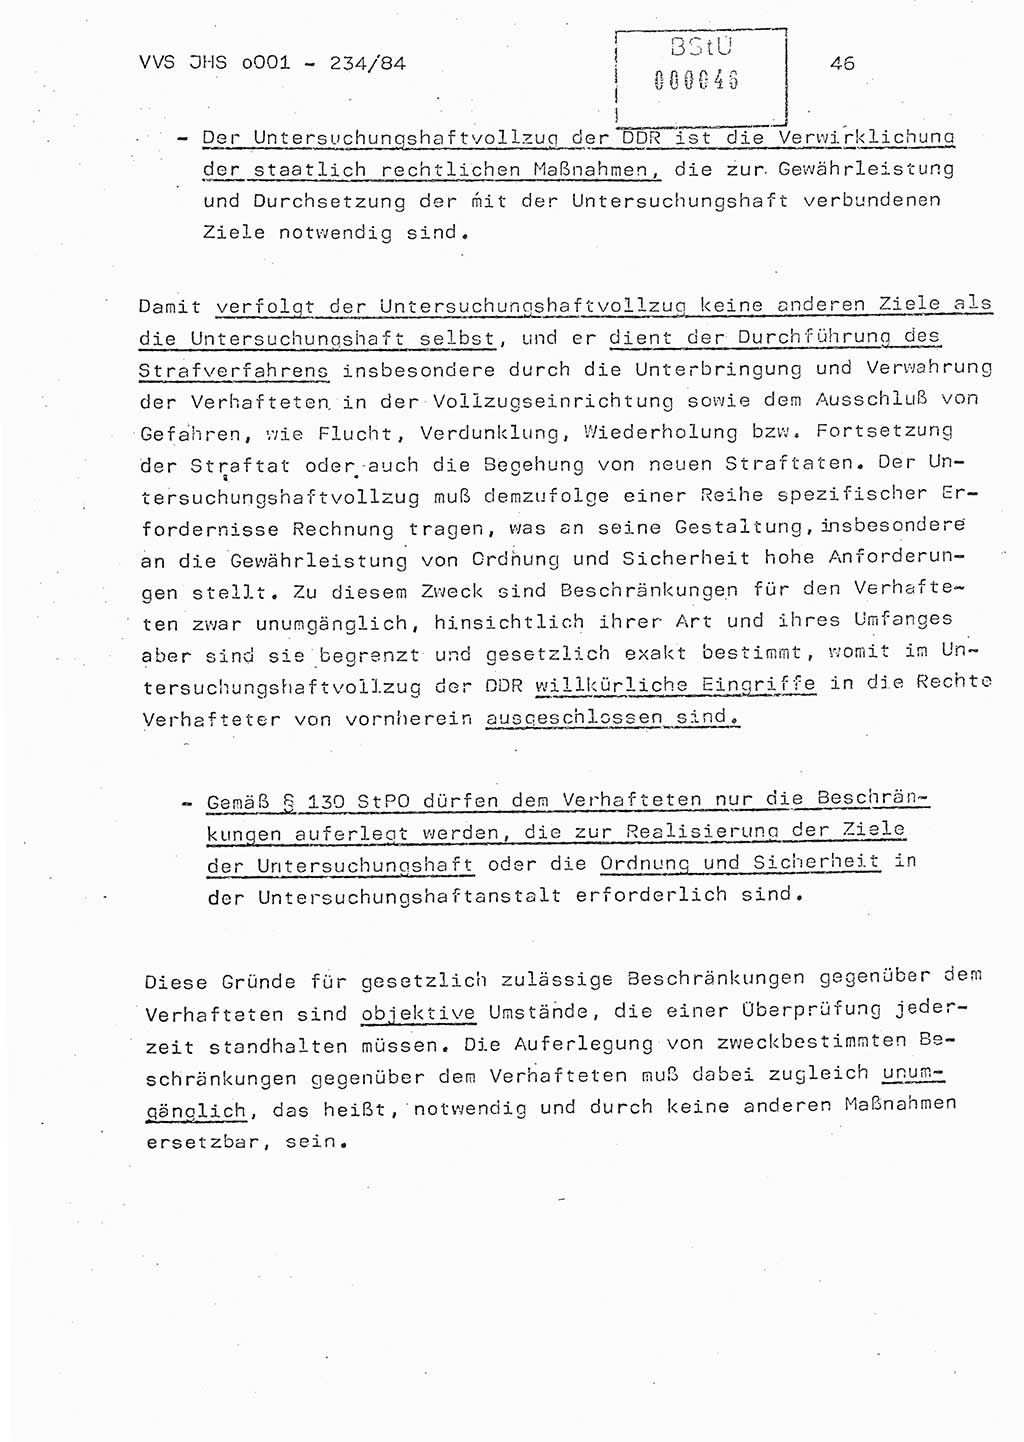 Dissertation Oberst Siegfried Rataizick (Abt. ⅩⅣ), Oberstleutnant Volkmar Heinz (Abt. ⅩⅣ), Oberstleutnant Werner Stein (HA Ⅸ), Hauptmann Heinz Conrad (JHS), Ministerium für Staatssicherheit (MfS) [Deutsche Demokratische Republik (DDR)], Juristische Hochschule (JHS), Vertrauliche Verschlußsache (VVS) o001-234/84, Potsdam 1984, Seite 46 (Diss. MfS DDR JHS VVS o001-234/84 1984, S. 46)